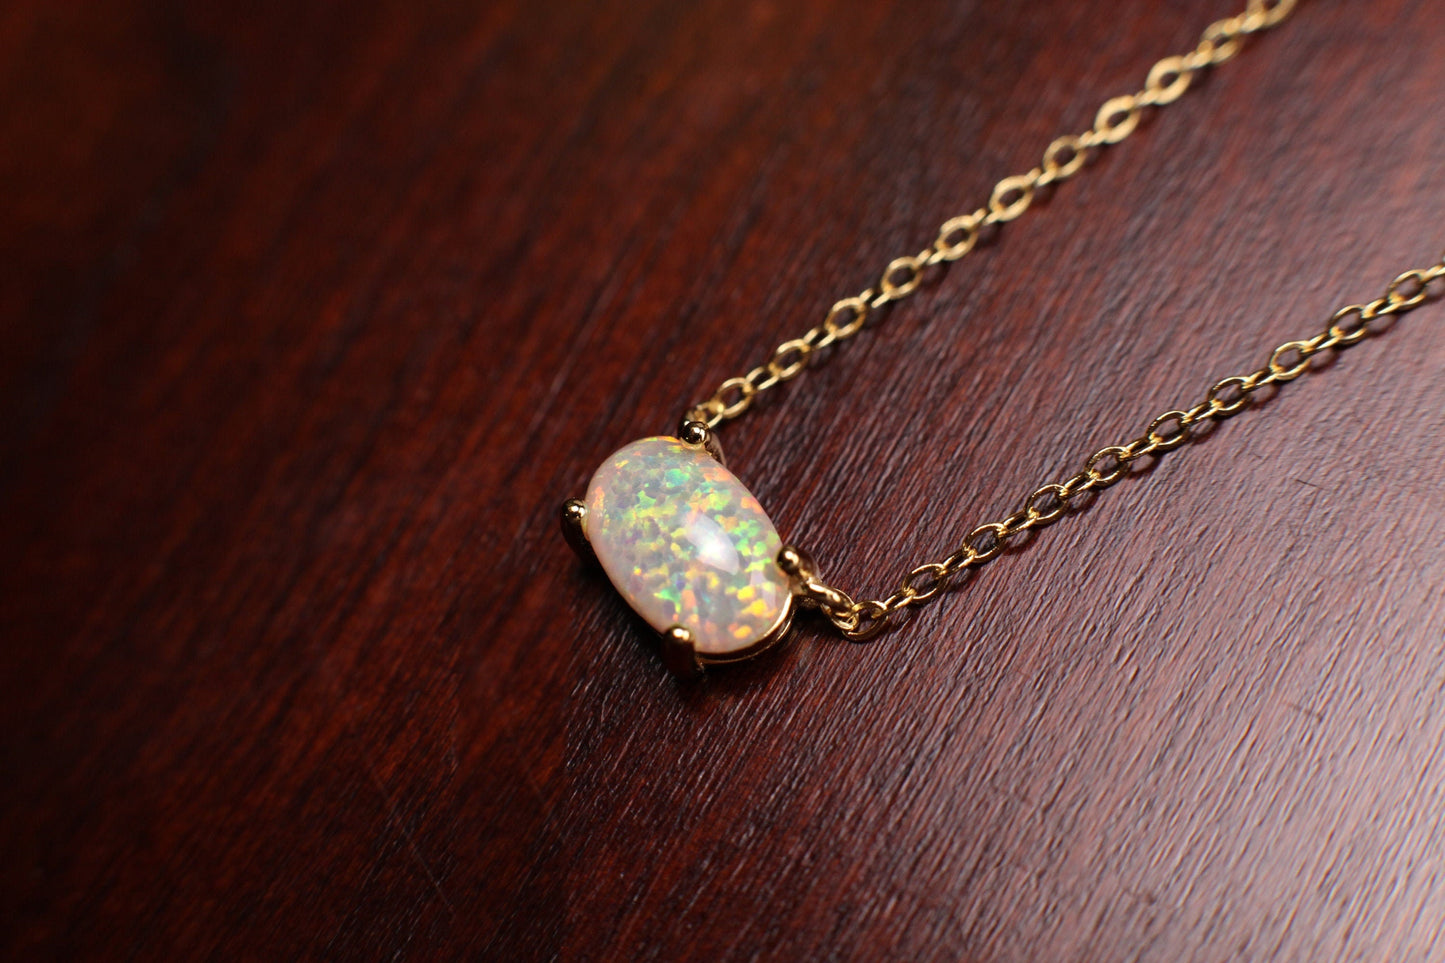 Ethiopian Fire Opal, Welo Opal, 5x9mm Oval Prong Pendant Necklace in 925 Sterling Silver, 22K Gold Vermeil AAA Quality Fiery Opal Elegant